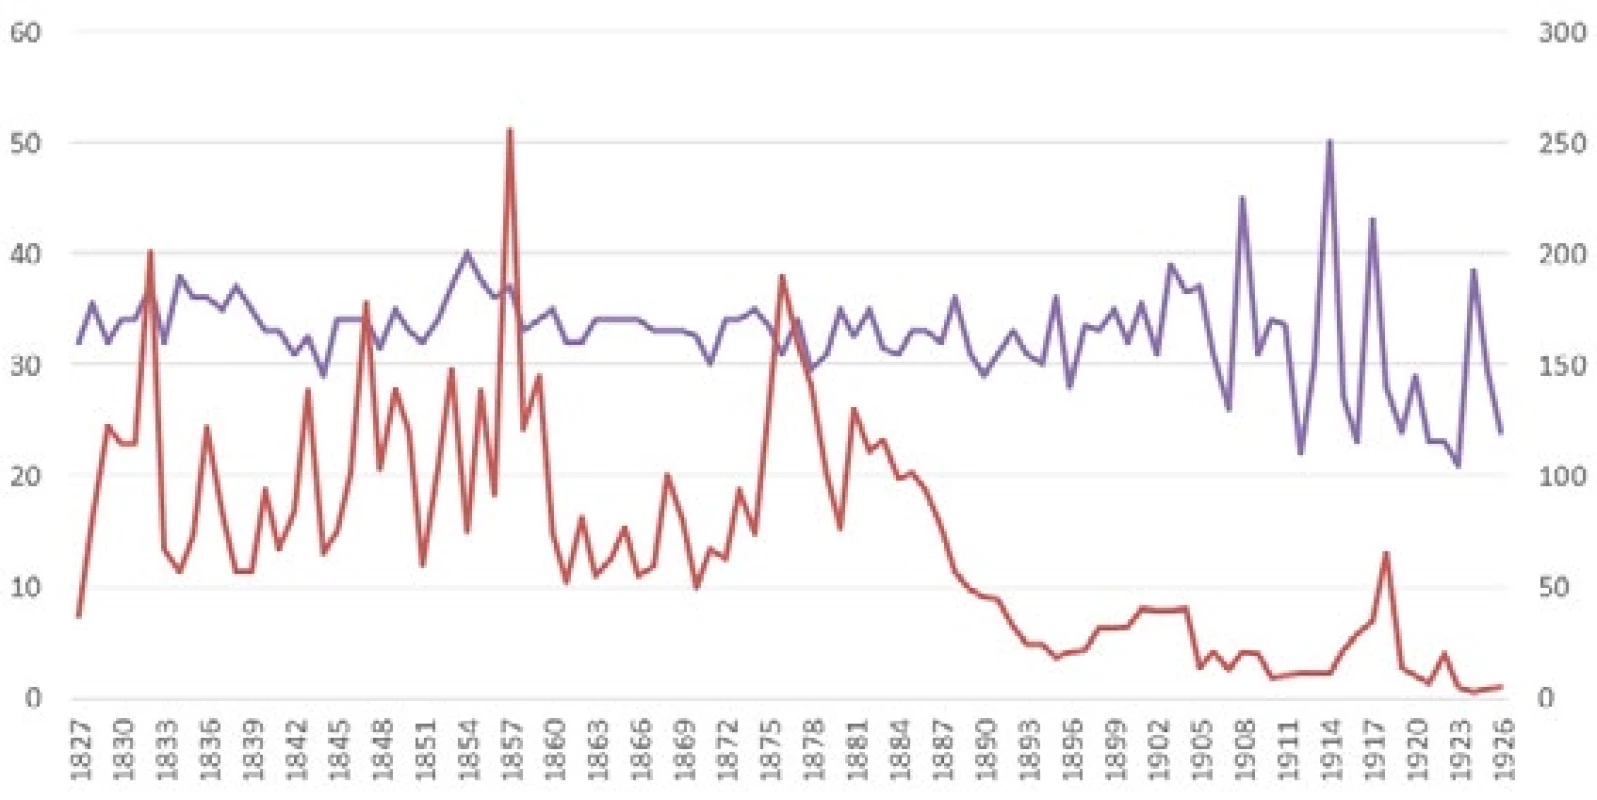 Počet zemřelých vězňů a medián jejich věku. Počtu zemřelých vězňů (červeně) náleží osa vpravo, mediánu jejich věku (modře) osa vlevo. Počet zemřelých se po roce 1889 významně snížil, zatímco věk zůstal prakticky stacionární.